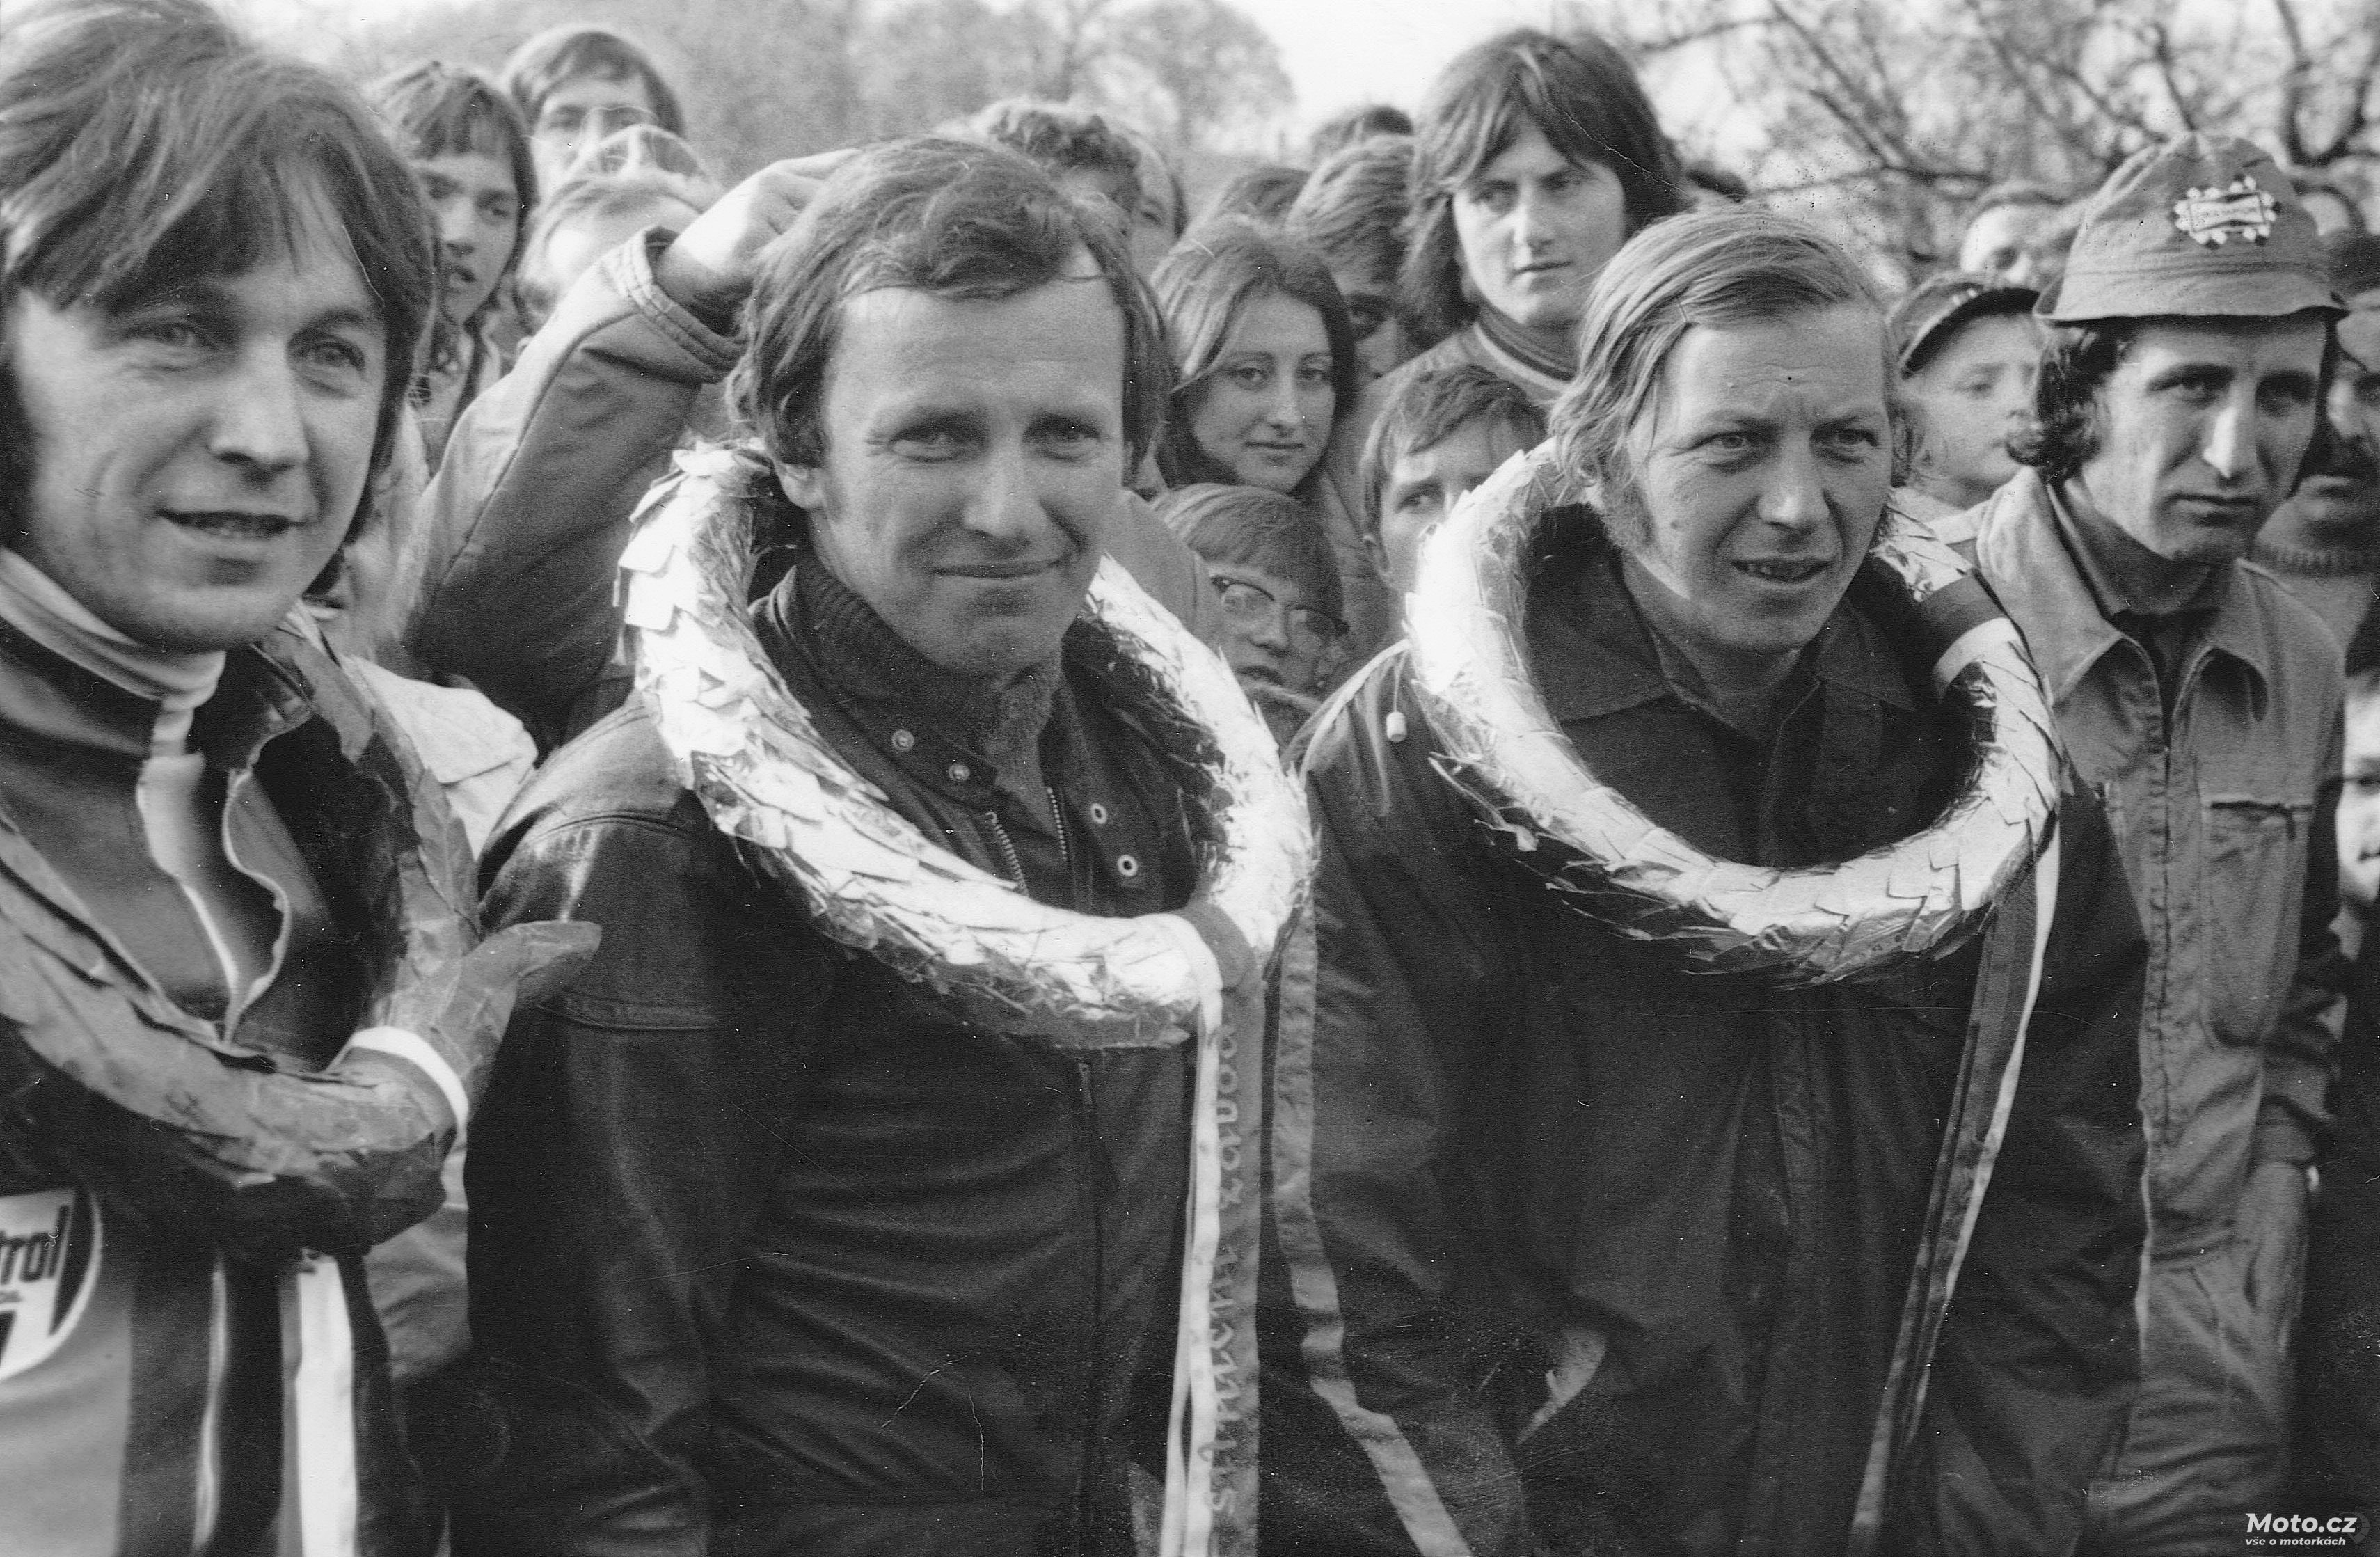 088 - Písek 1974: J. Král, J. Novotný, B. Staša, J. Pták